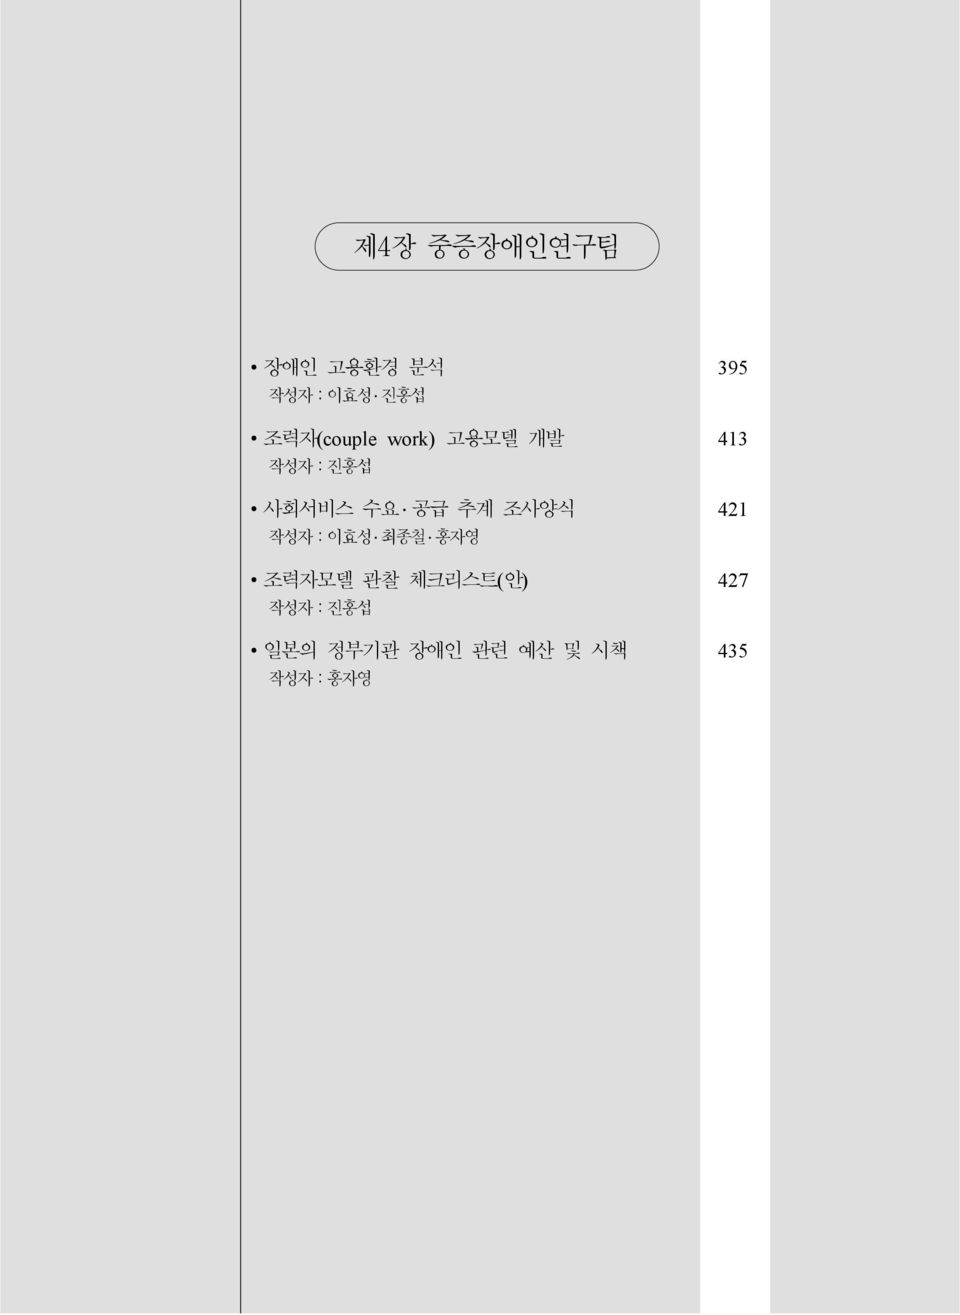 공급 추계 조사양식 421 작성자:이효성 최종철 홍자영 조력자모델 관찰